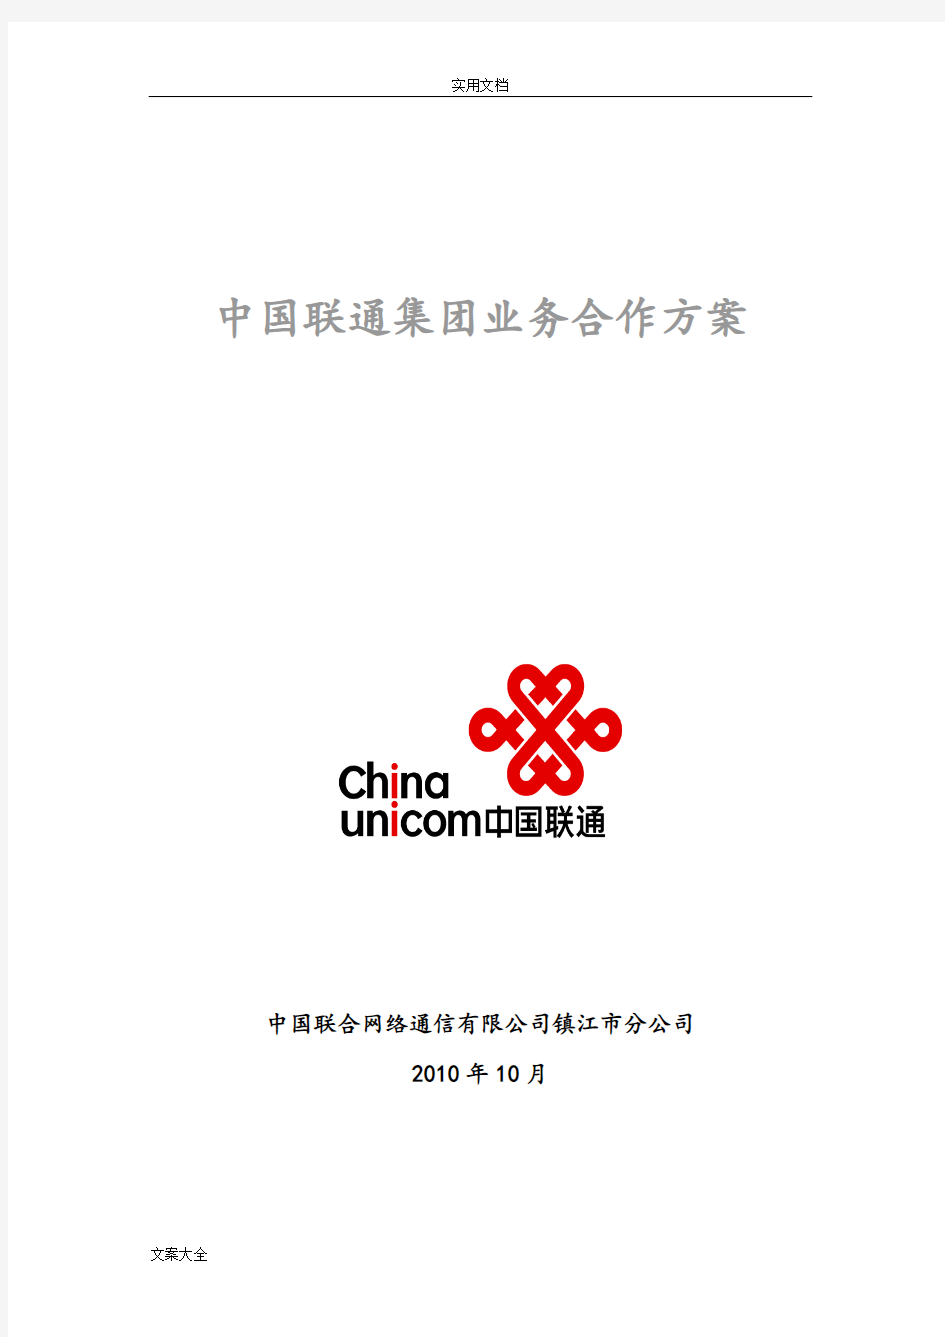 中国联通集团业务合作方案设计